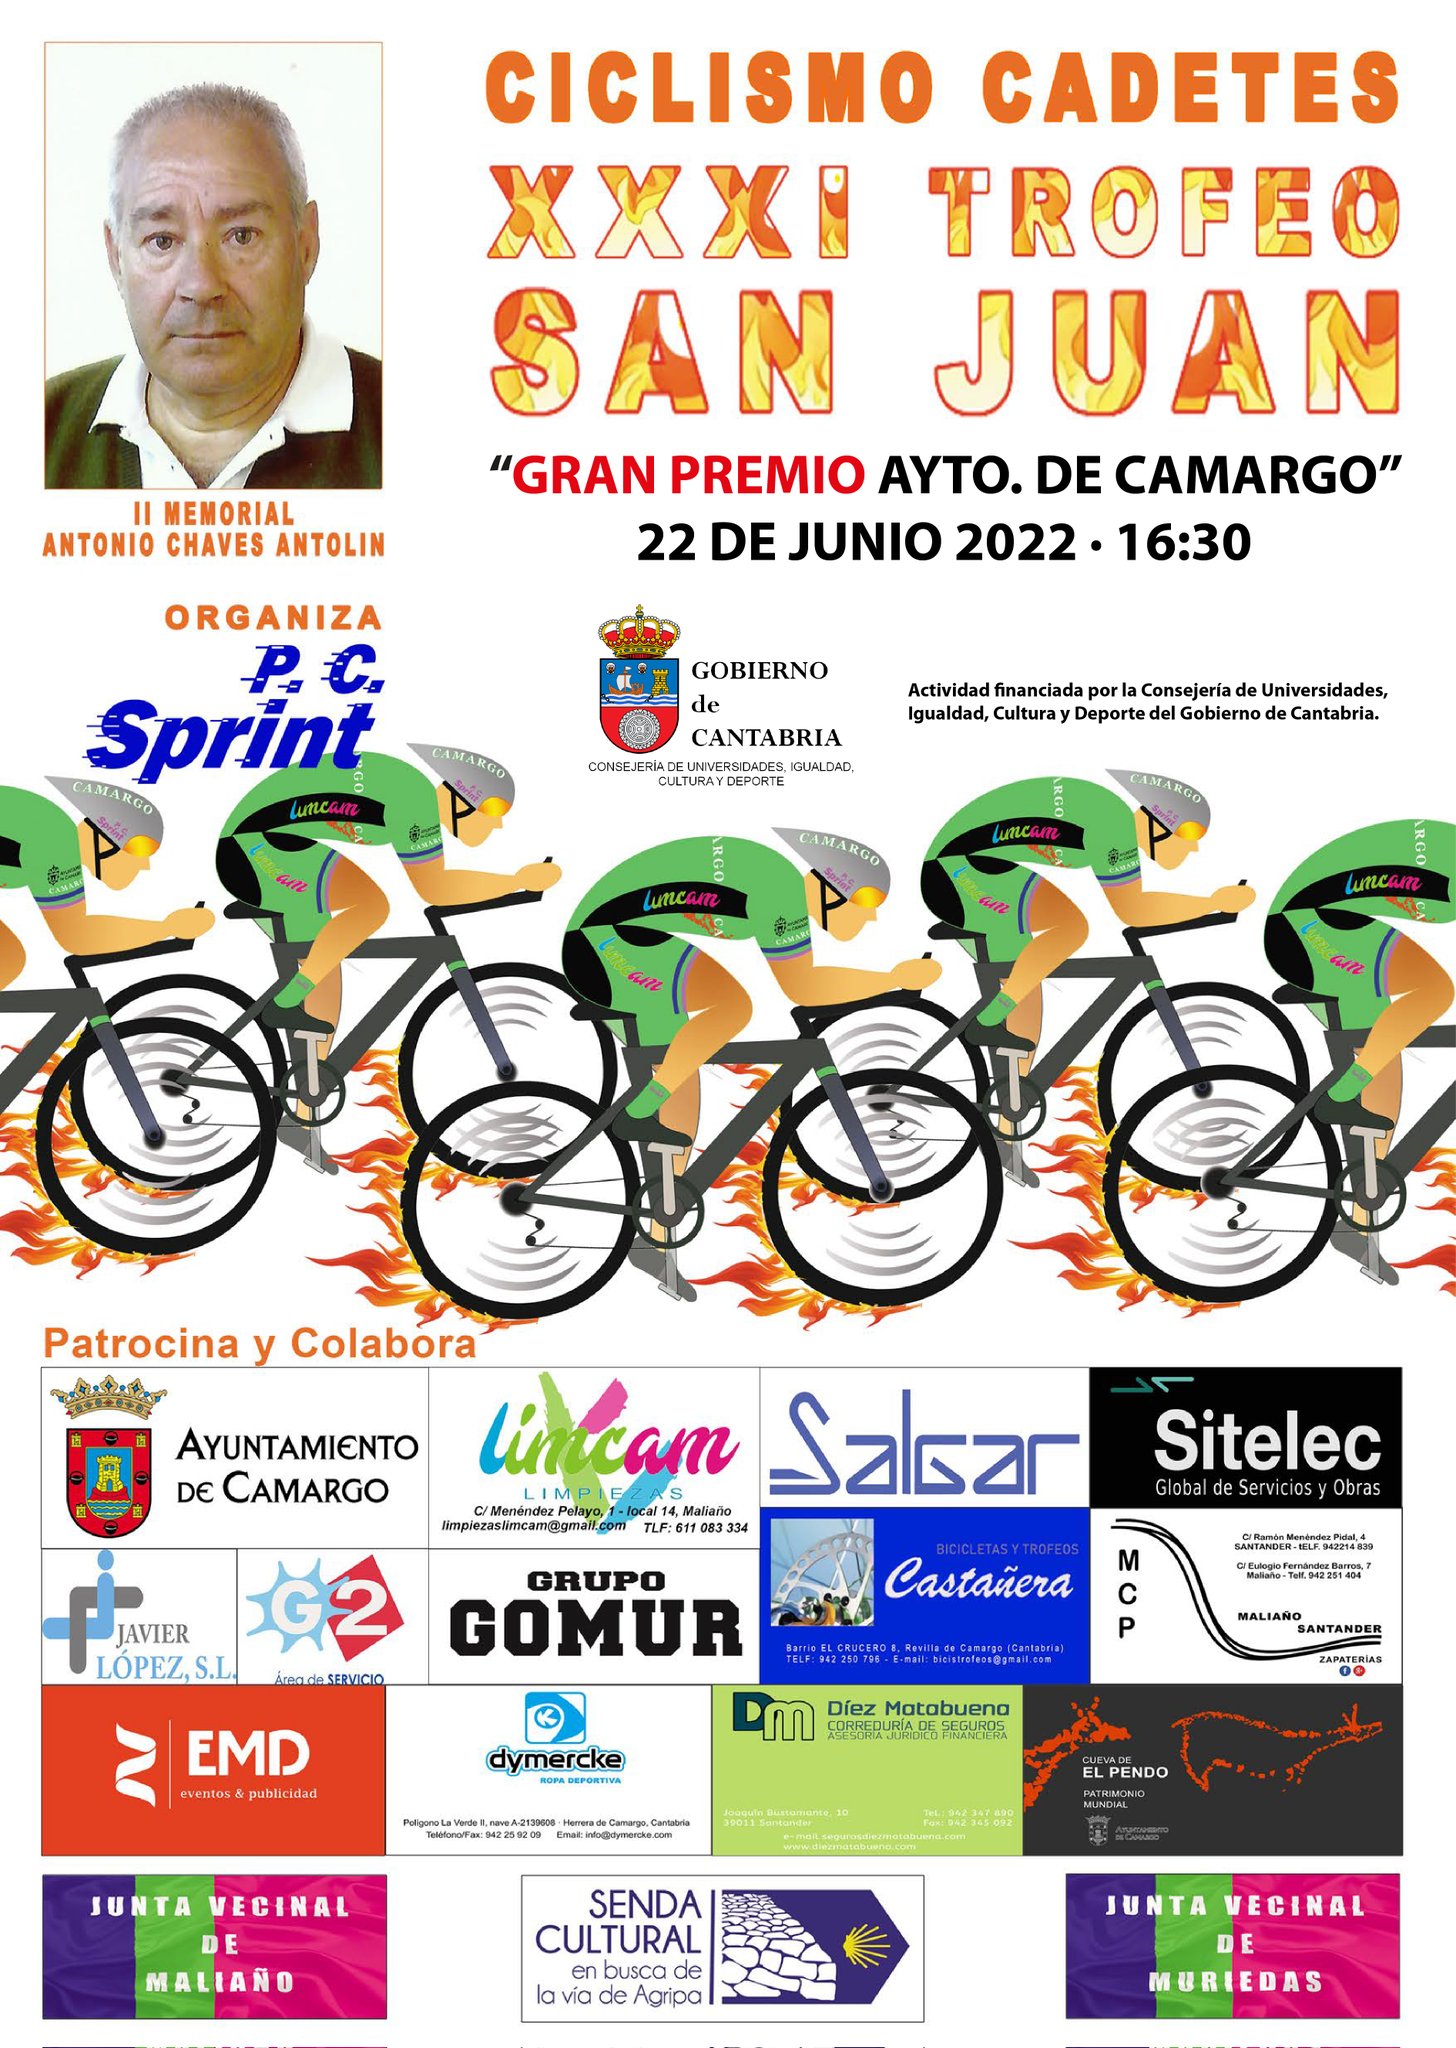 Mario Gómez se lleva el XXXI Trofeo San Juan-GP Ayuntamiento de Camargo de cadetes